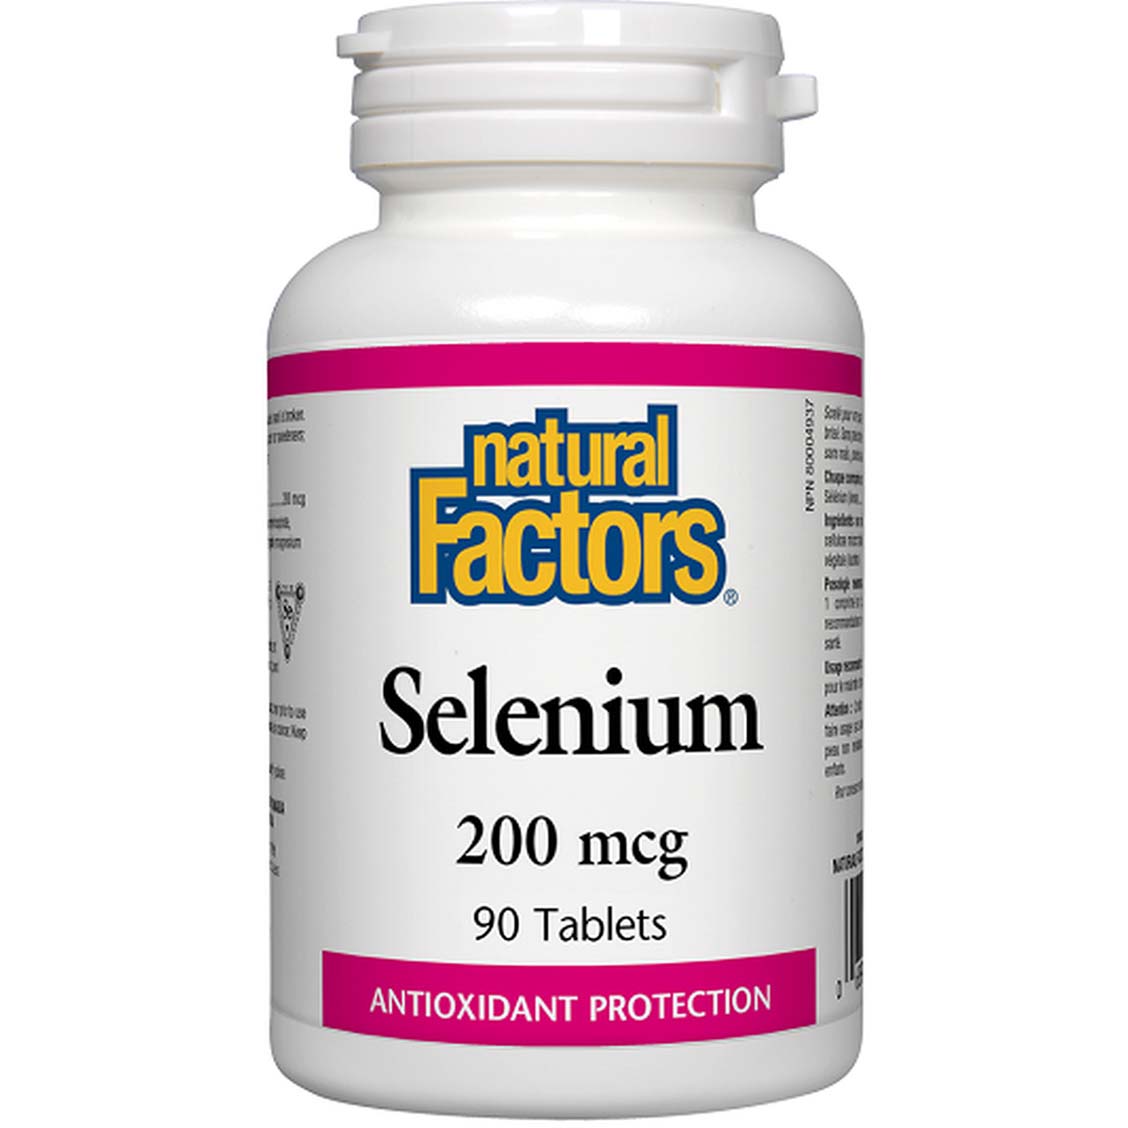 Natural Factors Selenium 90 Tablets 200 mcg